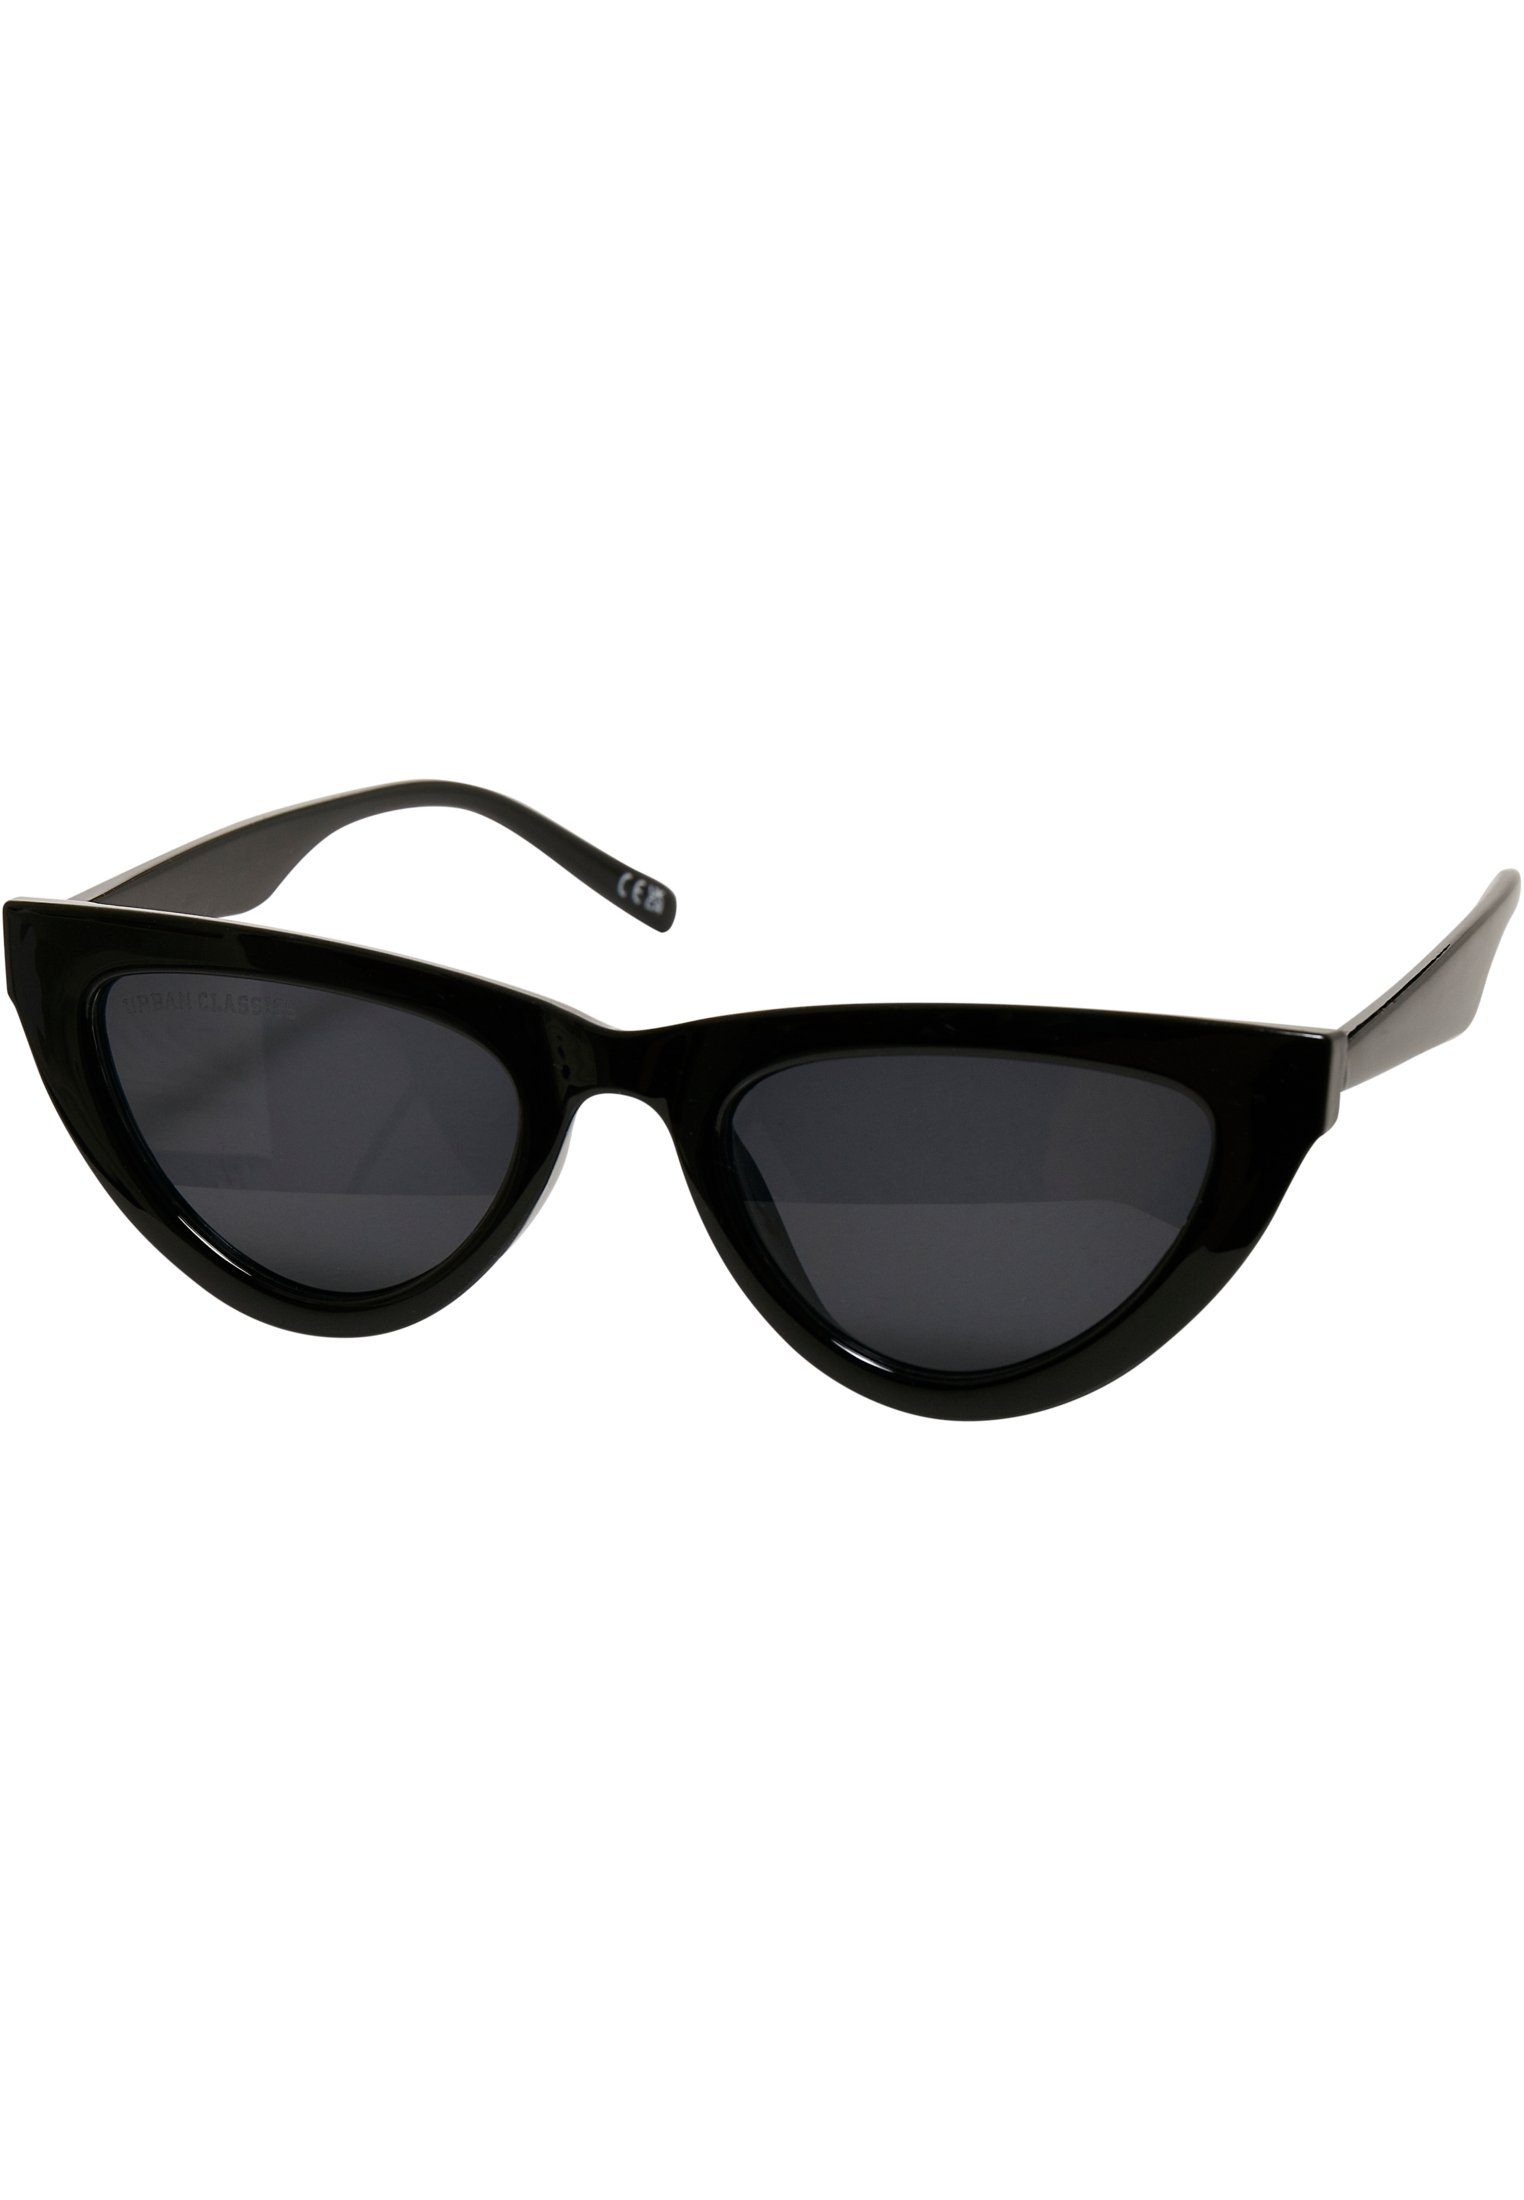 Sonnenbrille Unisex Sunglasses CLASSICS URBAN Arica